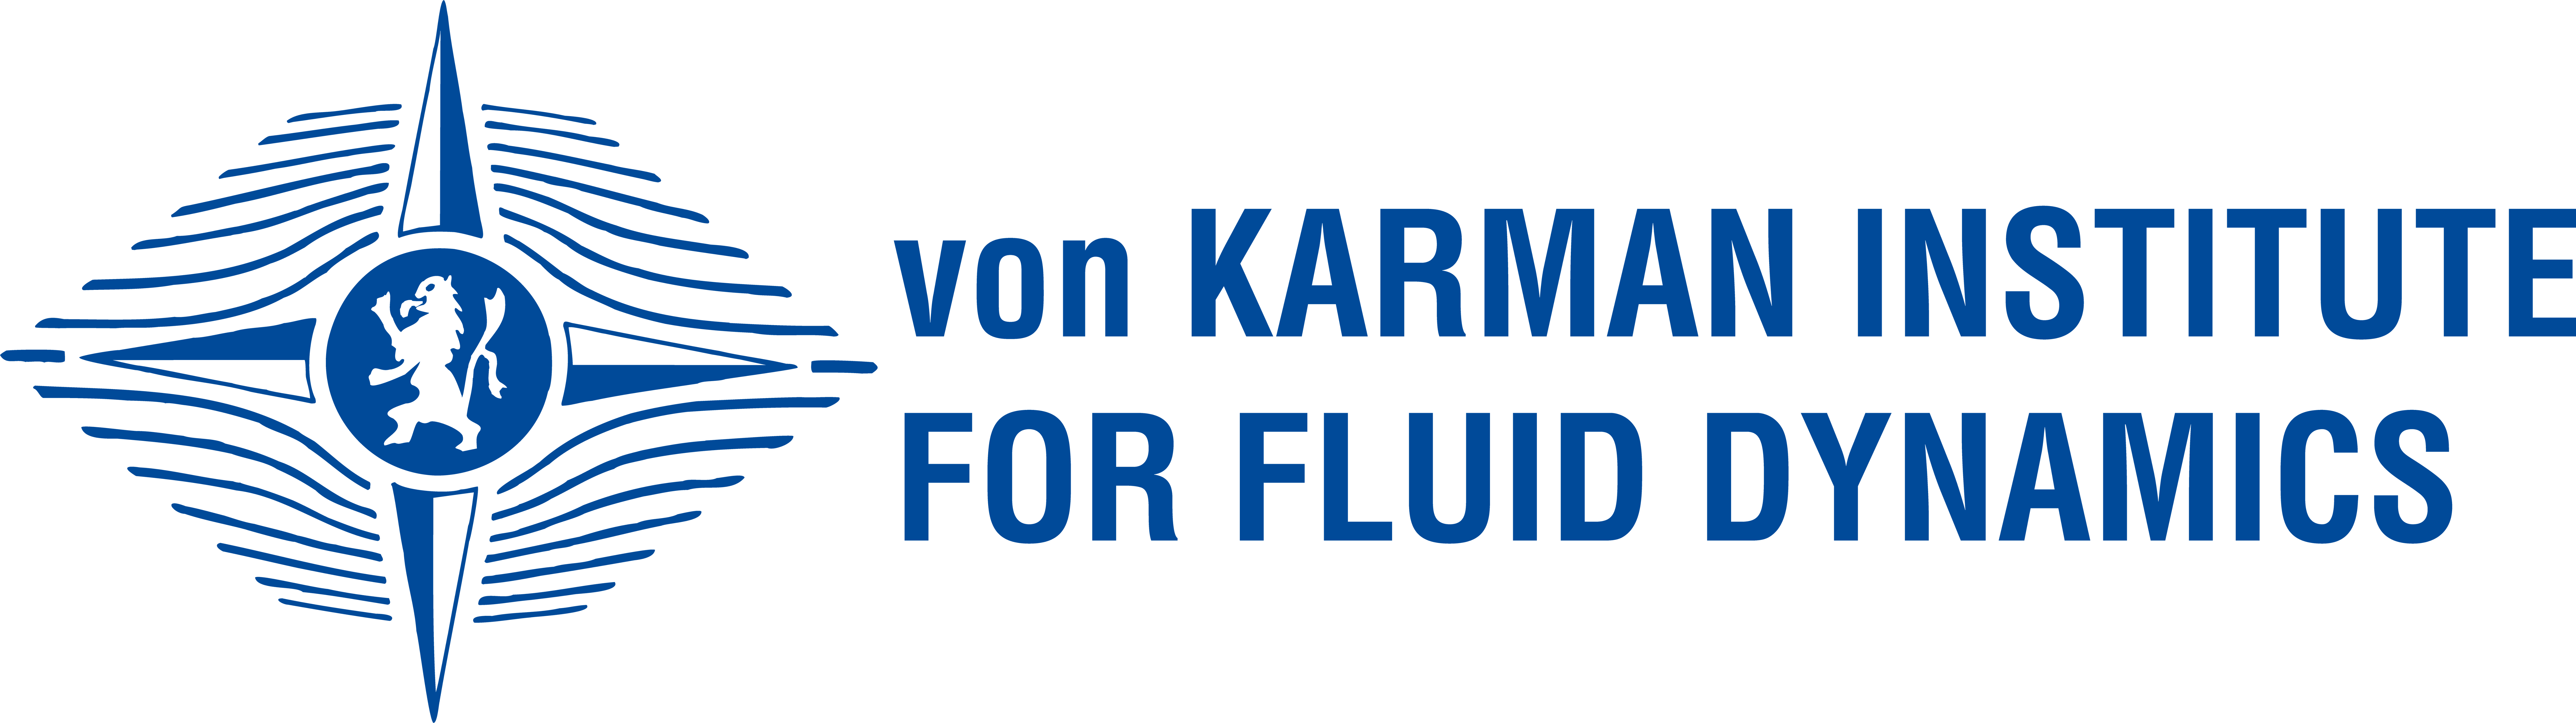 von karman institute logo 2020